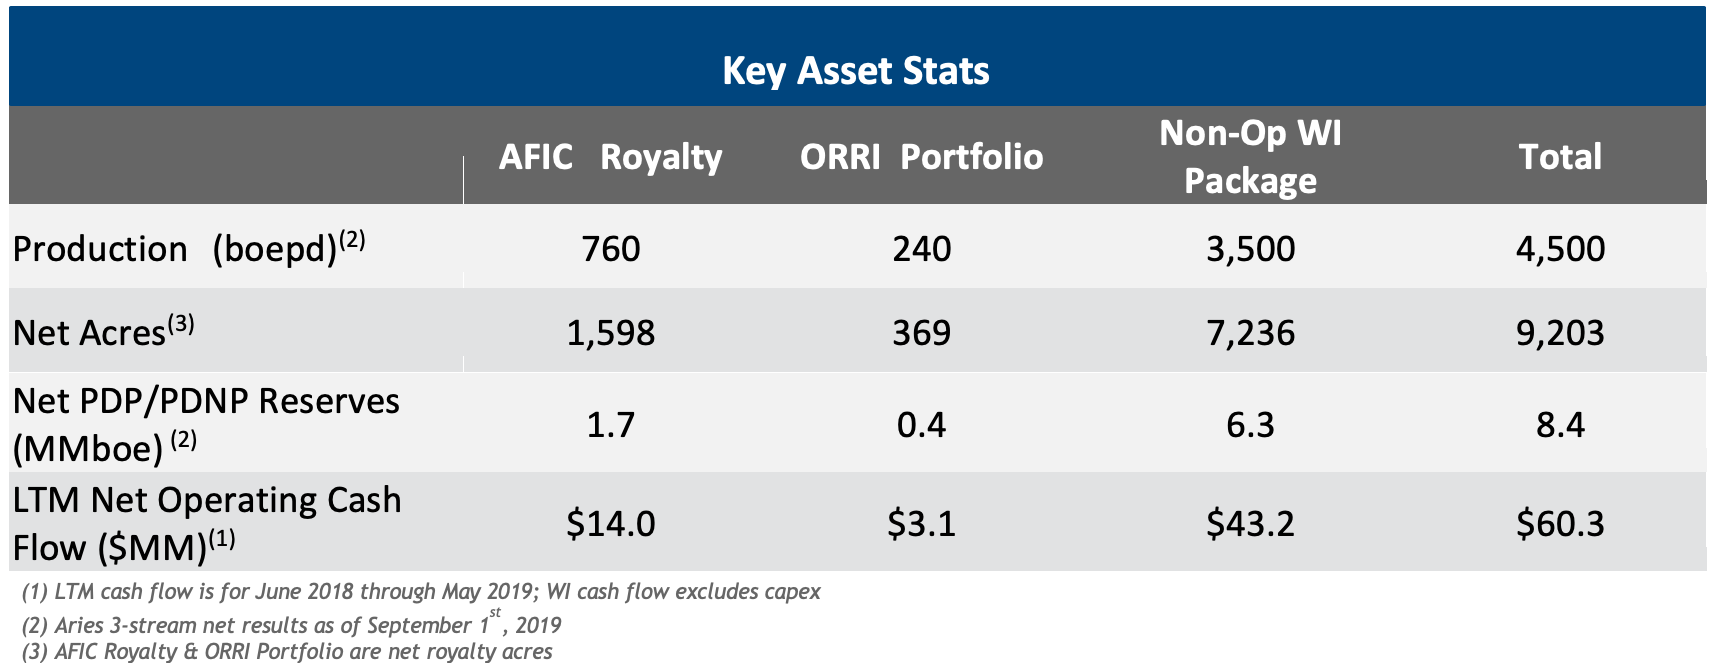 Anschutz D-J Basin Royalty and Non-Op Package Key Asset Stats Chart (Source: SunTrust Robinson Humphrey Inc.)